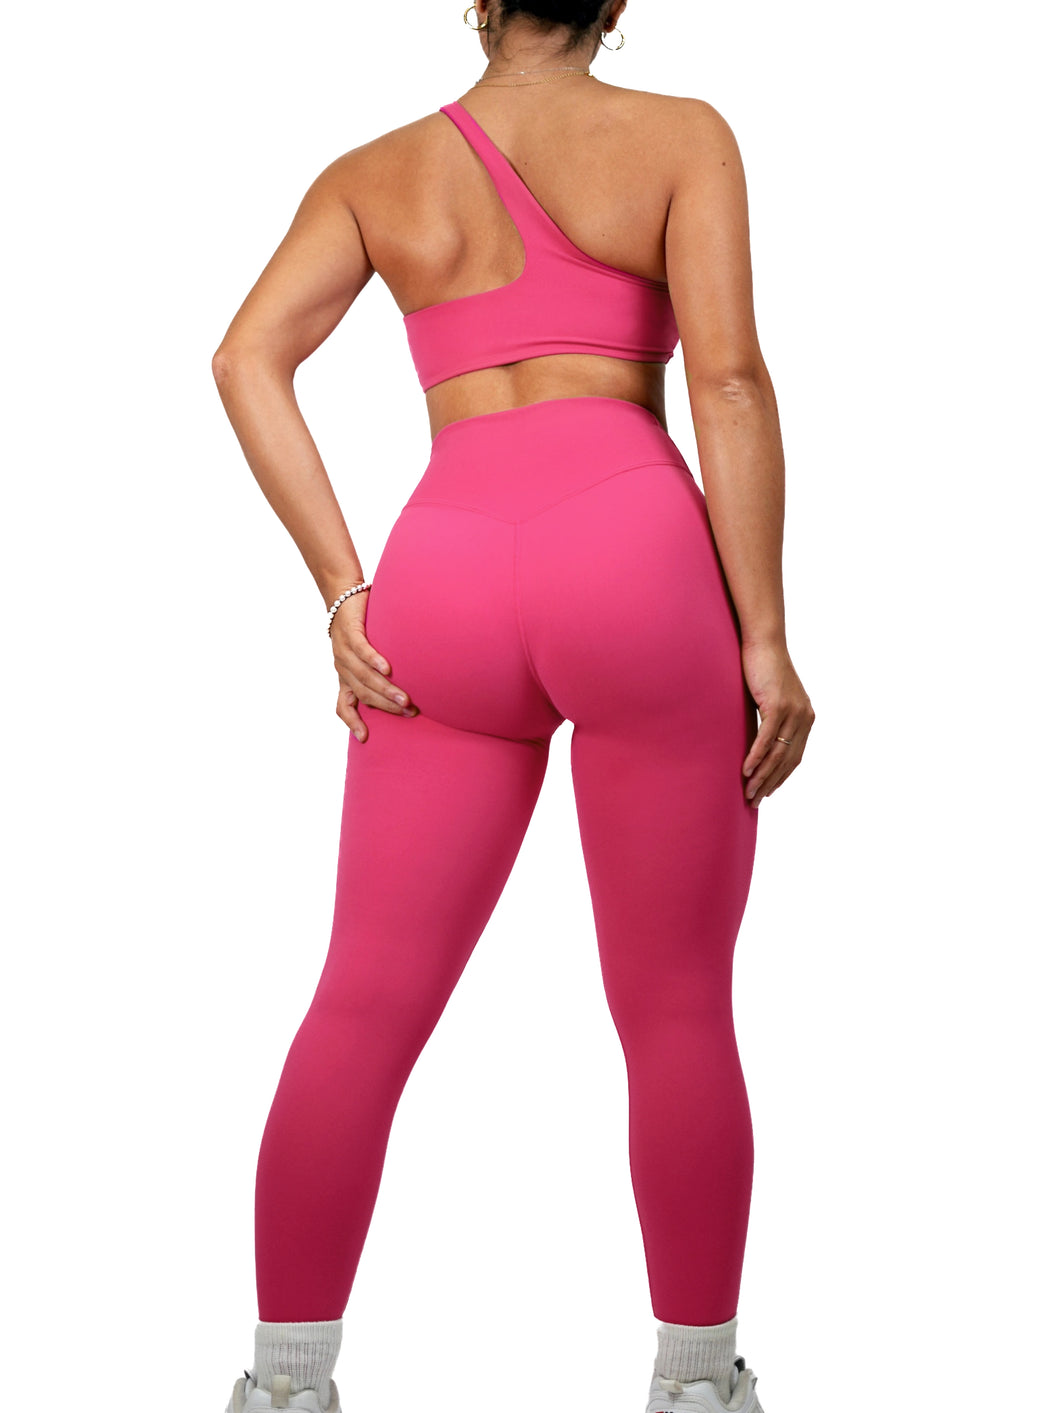 Athletic V Leggings (Hot Pink)